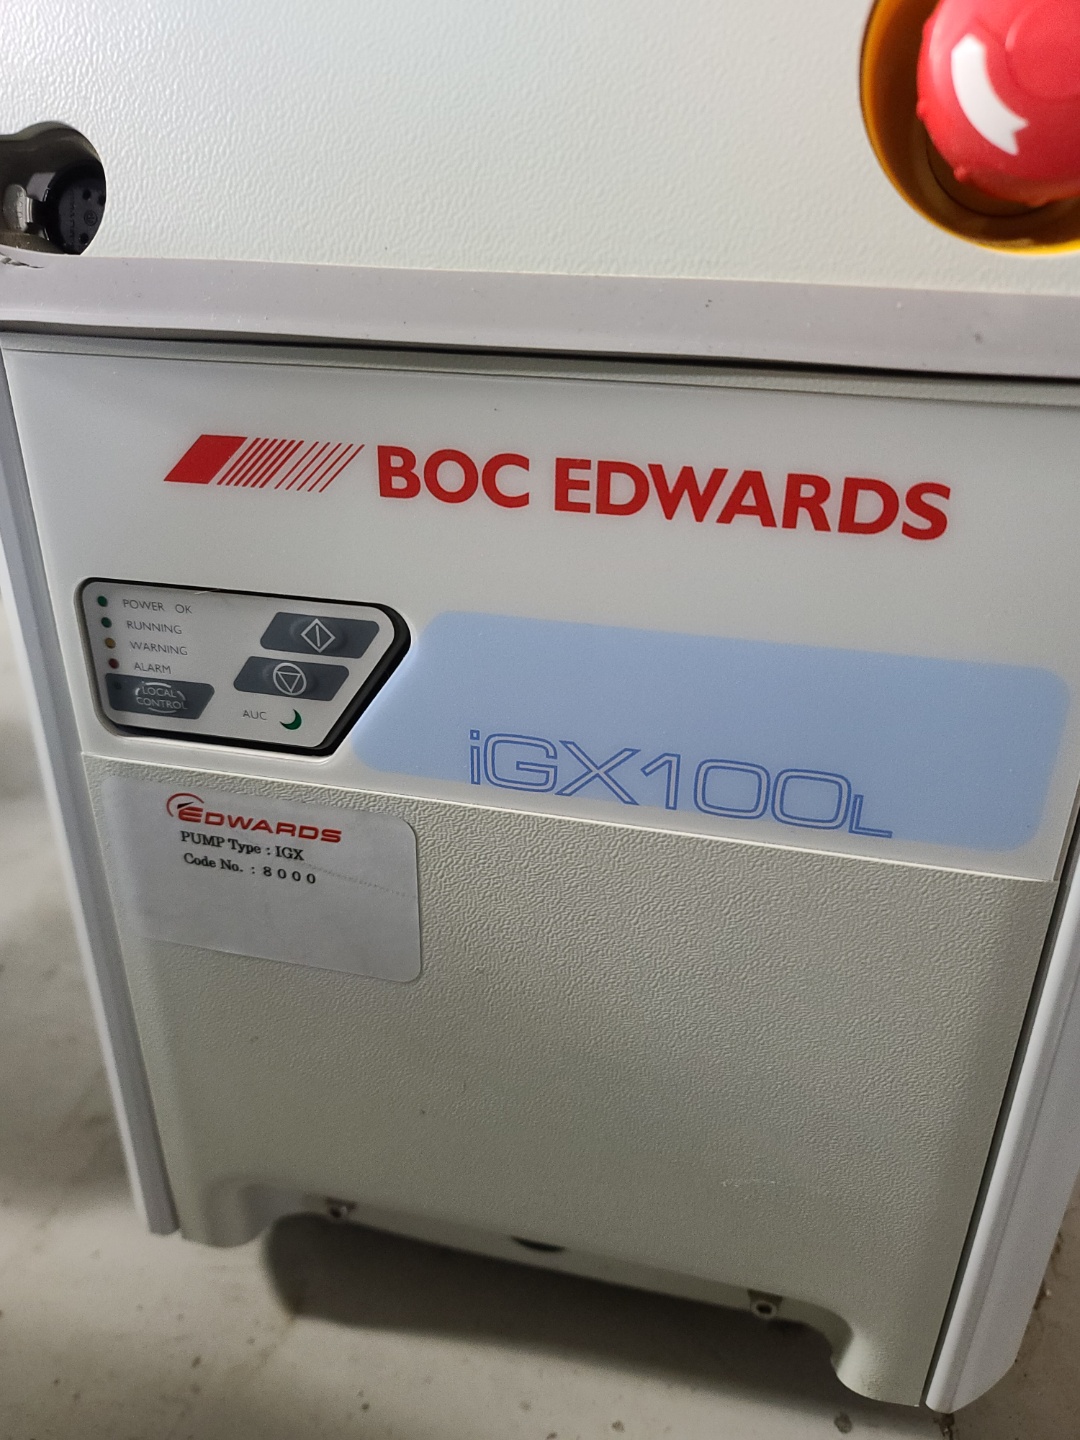 Edwards iGX 100L